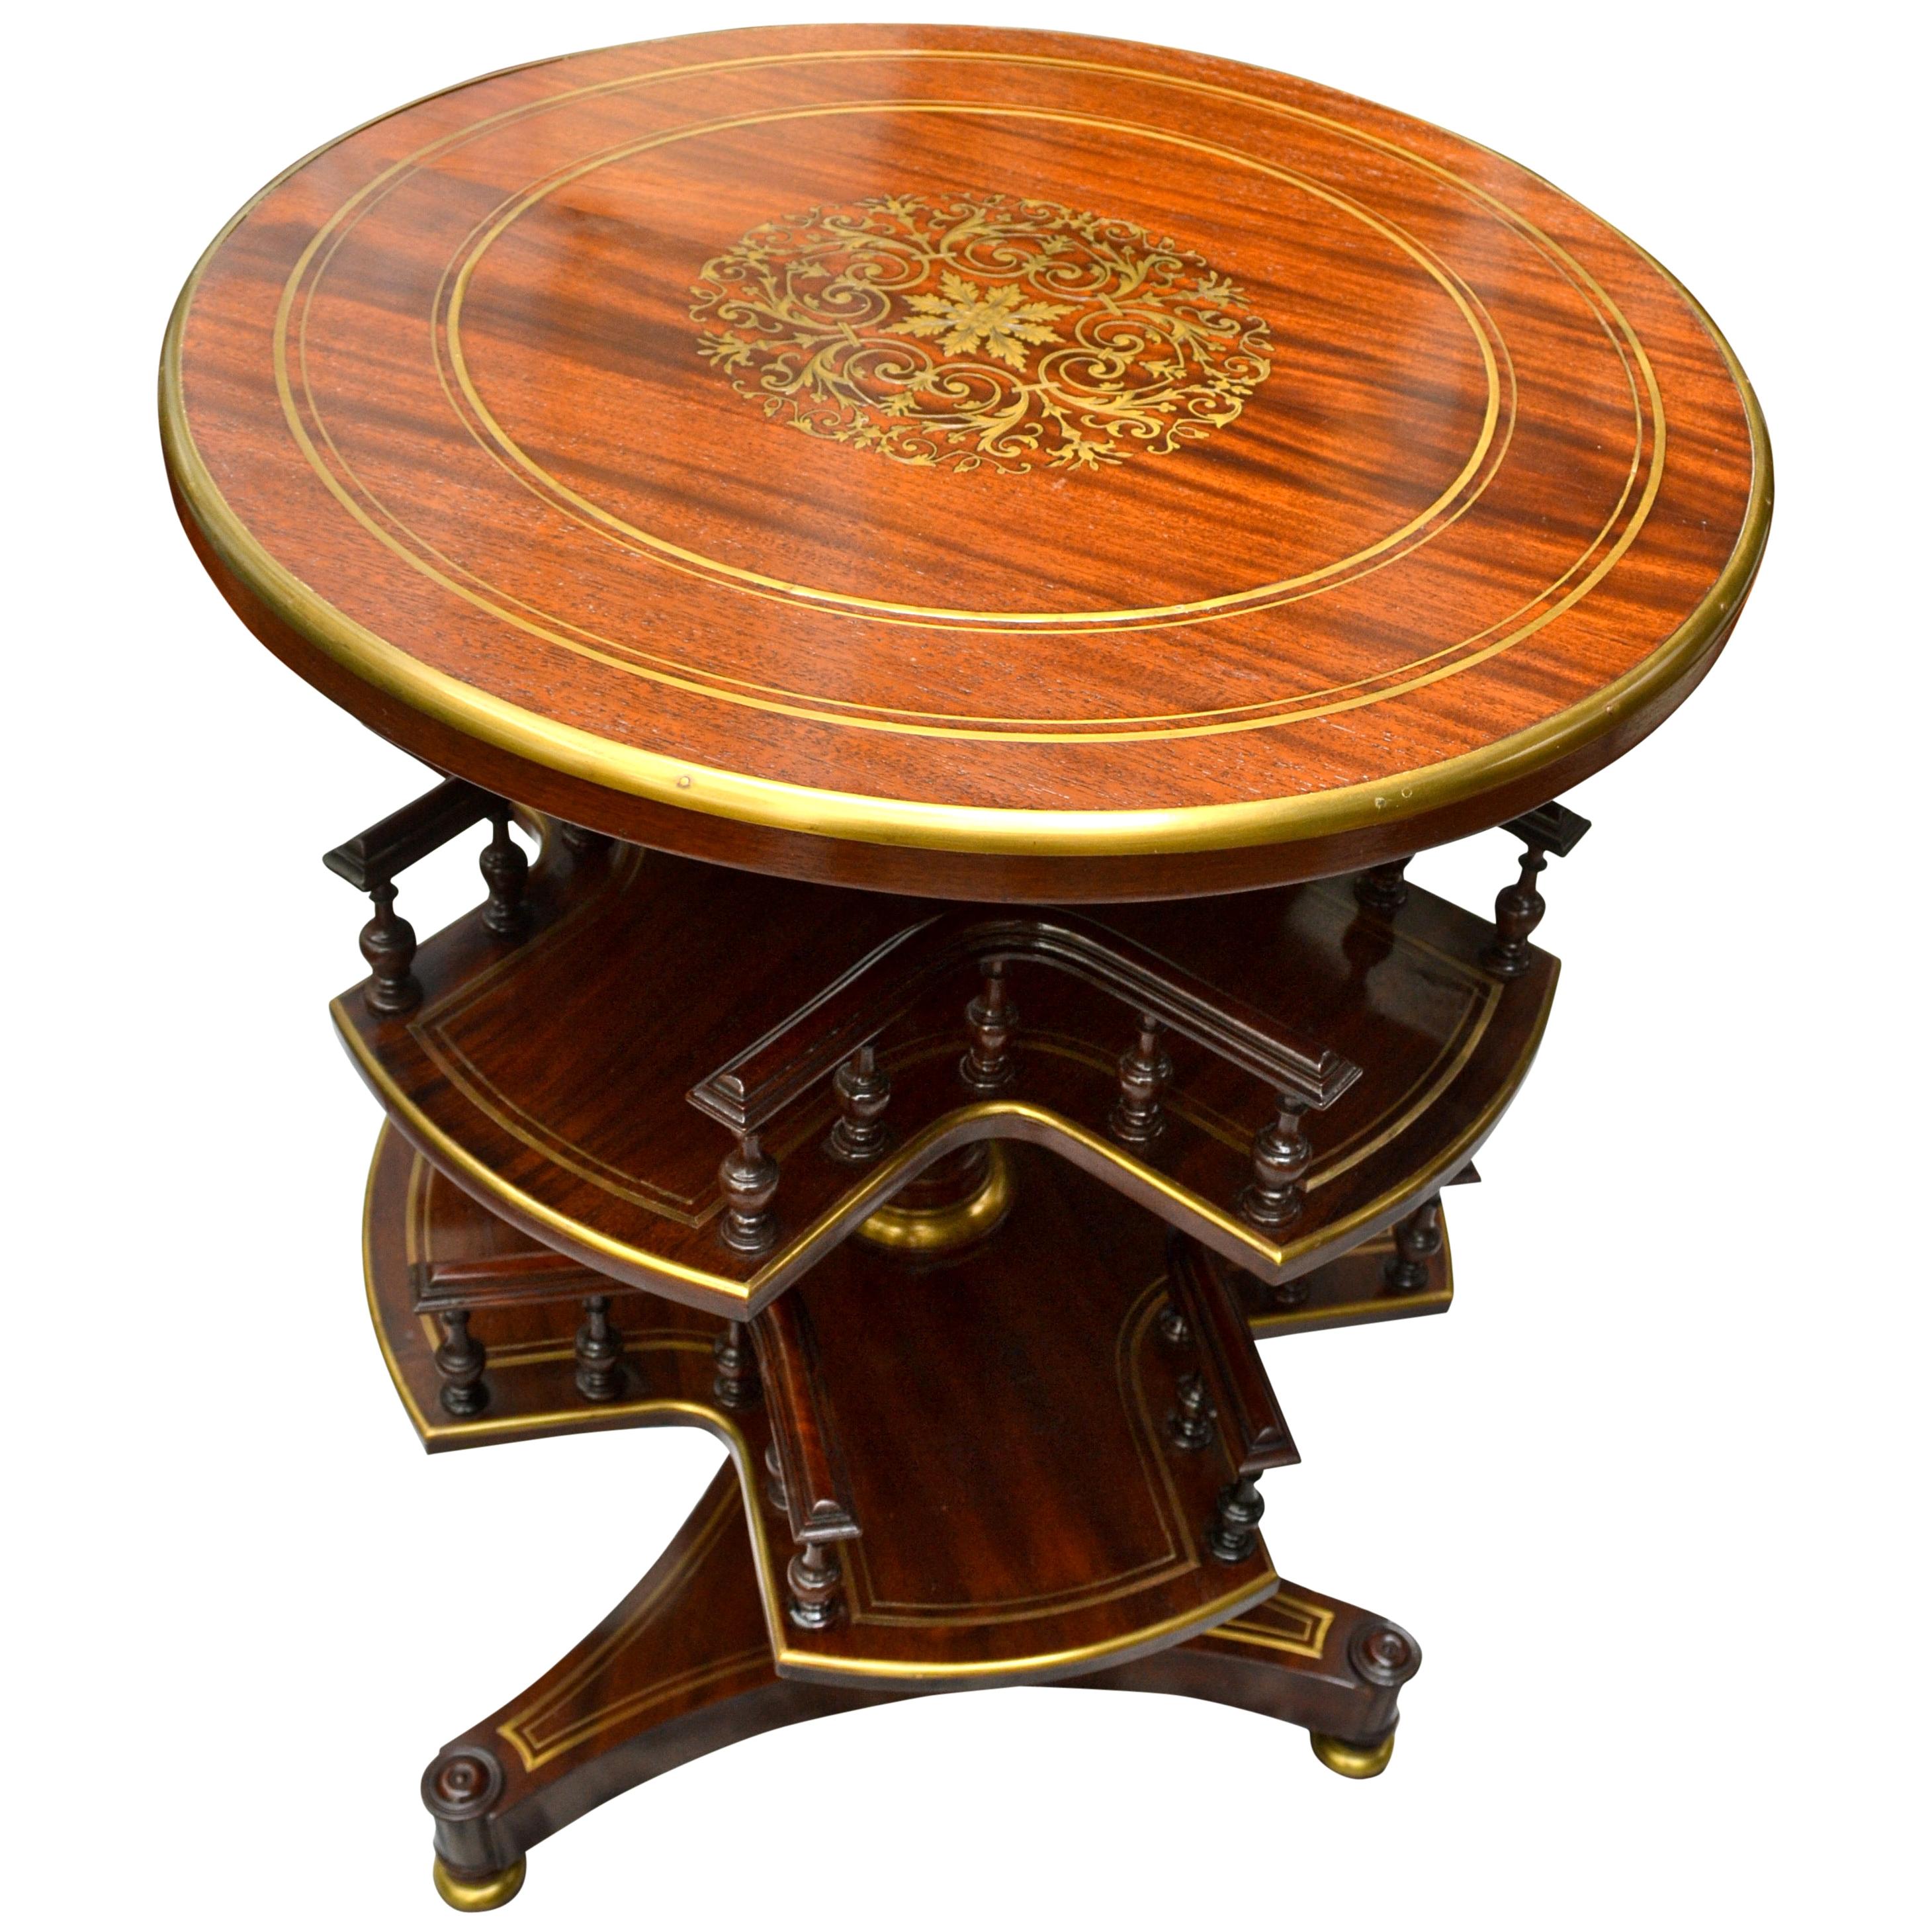 englischer Karussell-Tisch im Regency-Stil des 19